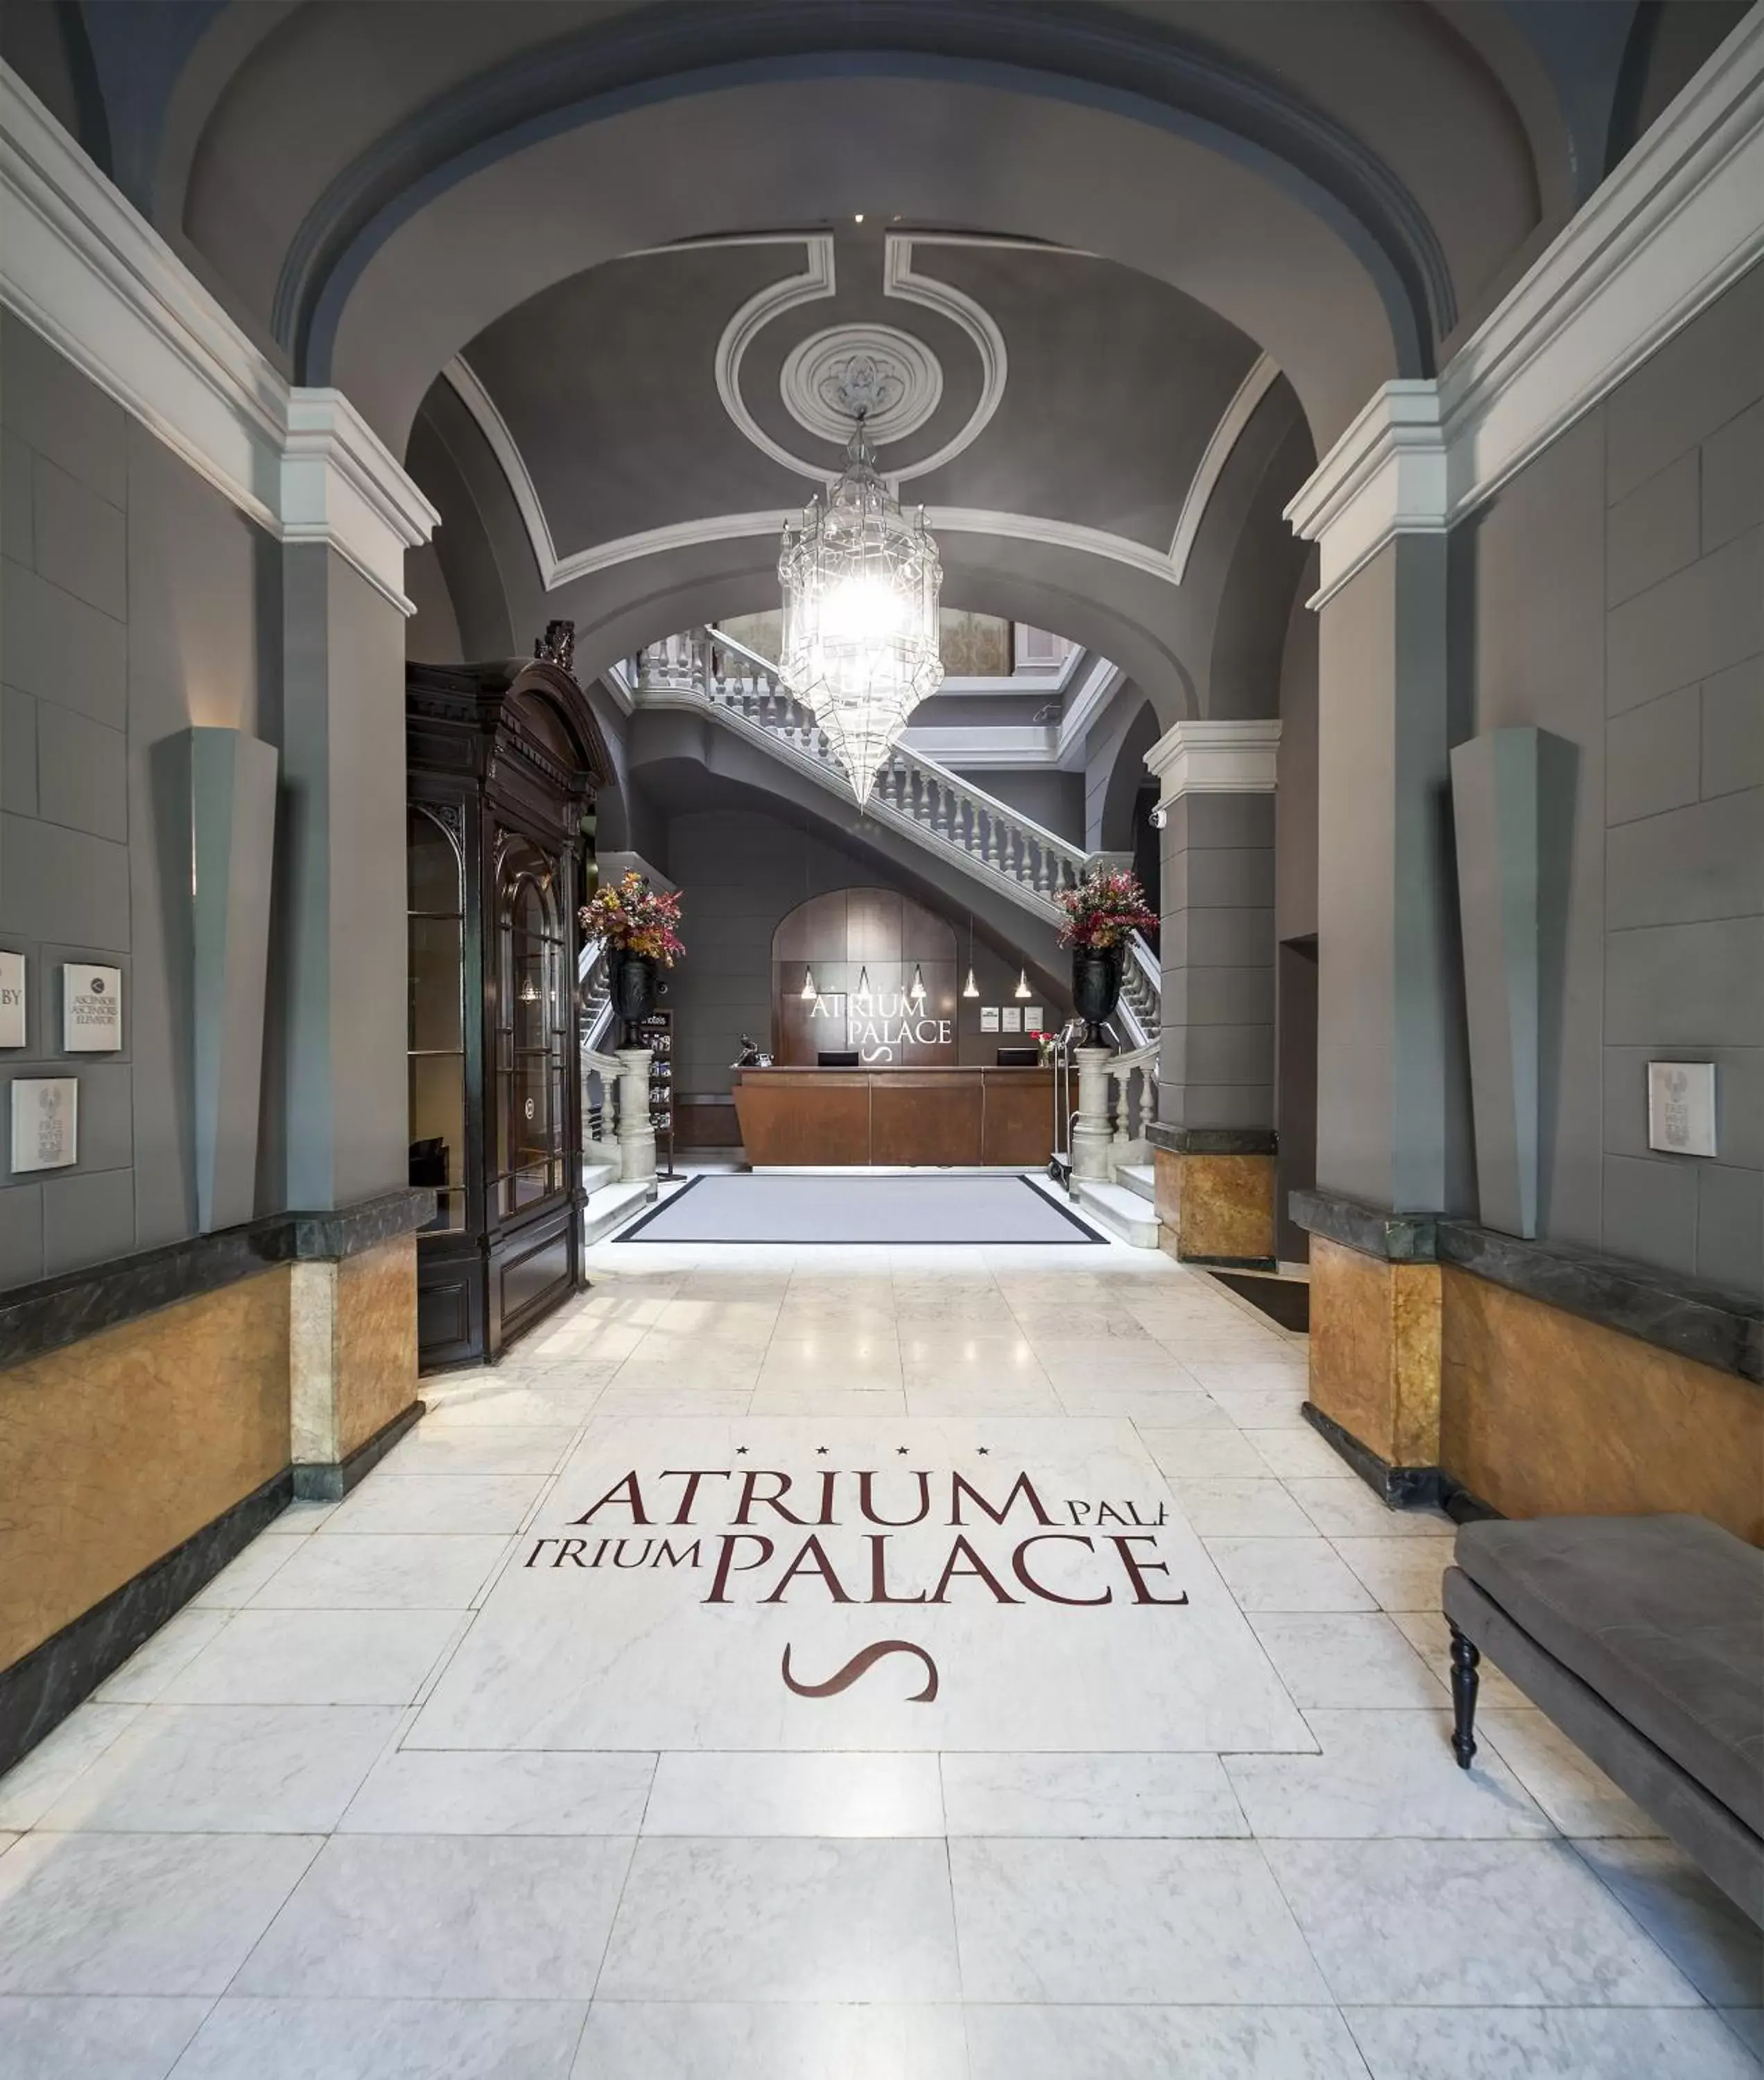 Day in Acta Atrium Palace